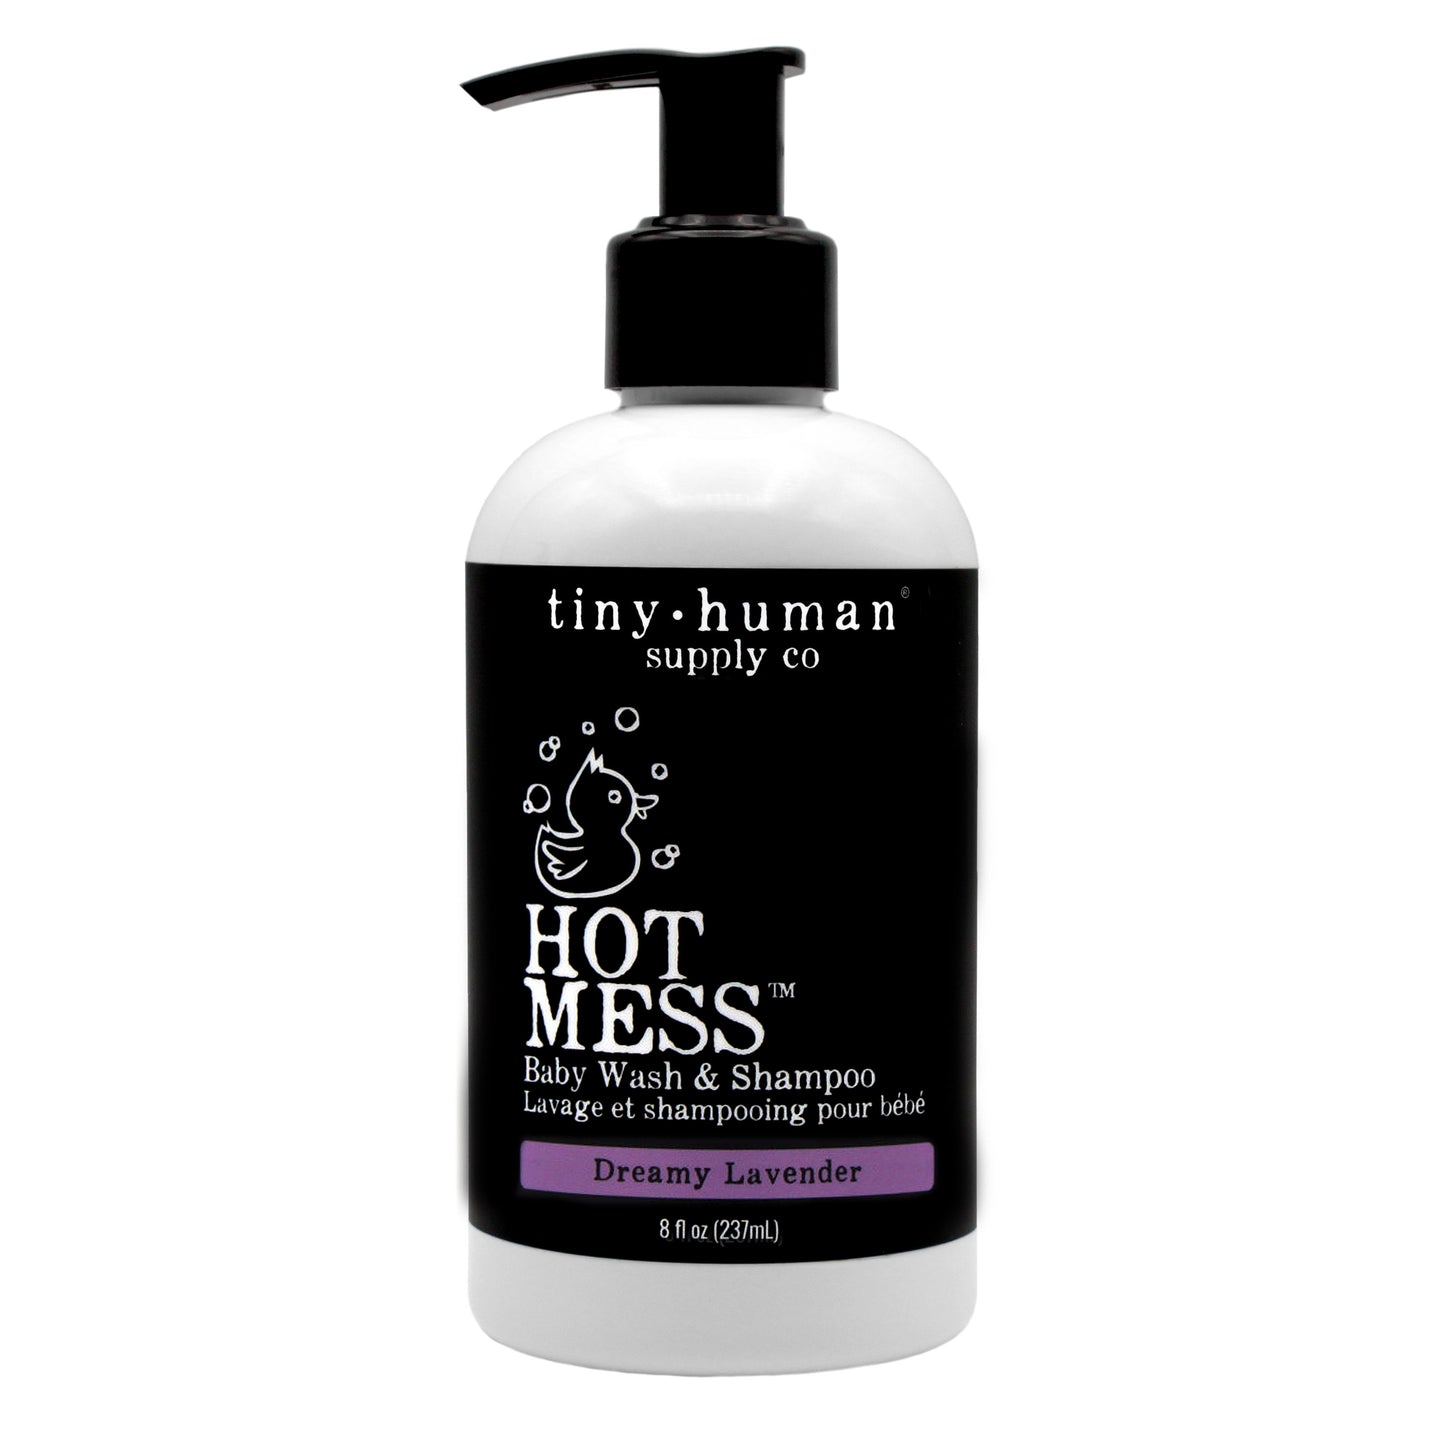 HOT MESS™ Shampoo & Baby Wash